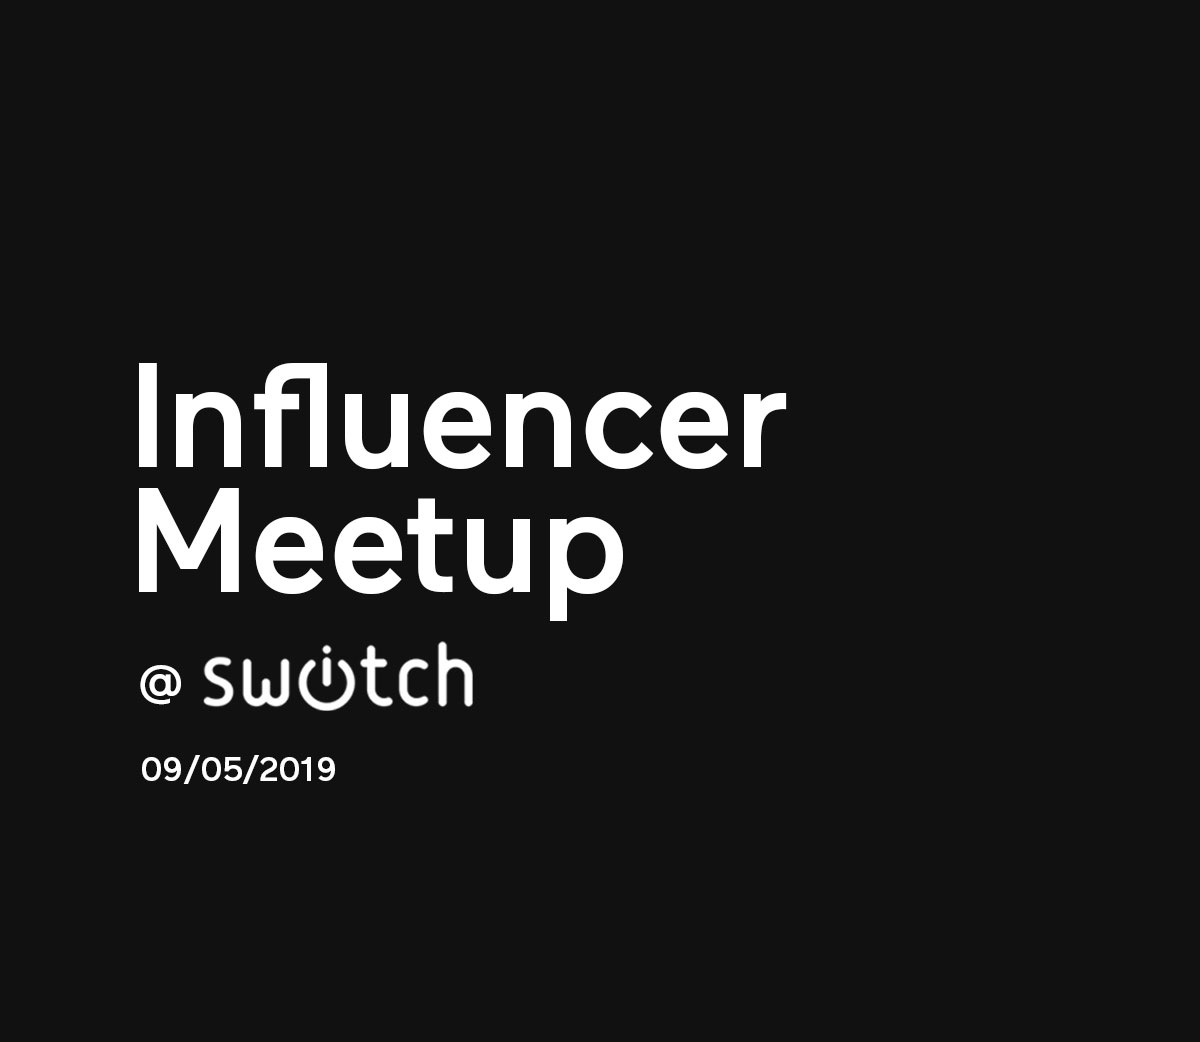 Influencer meetup